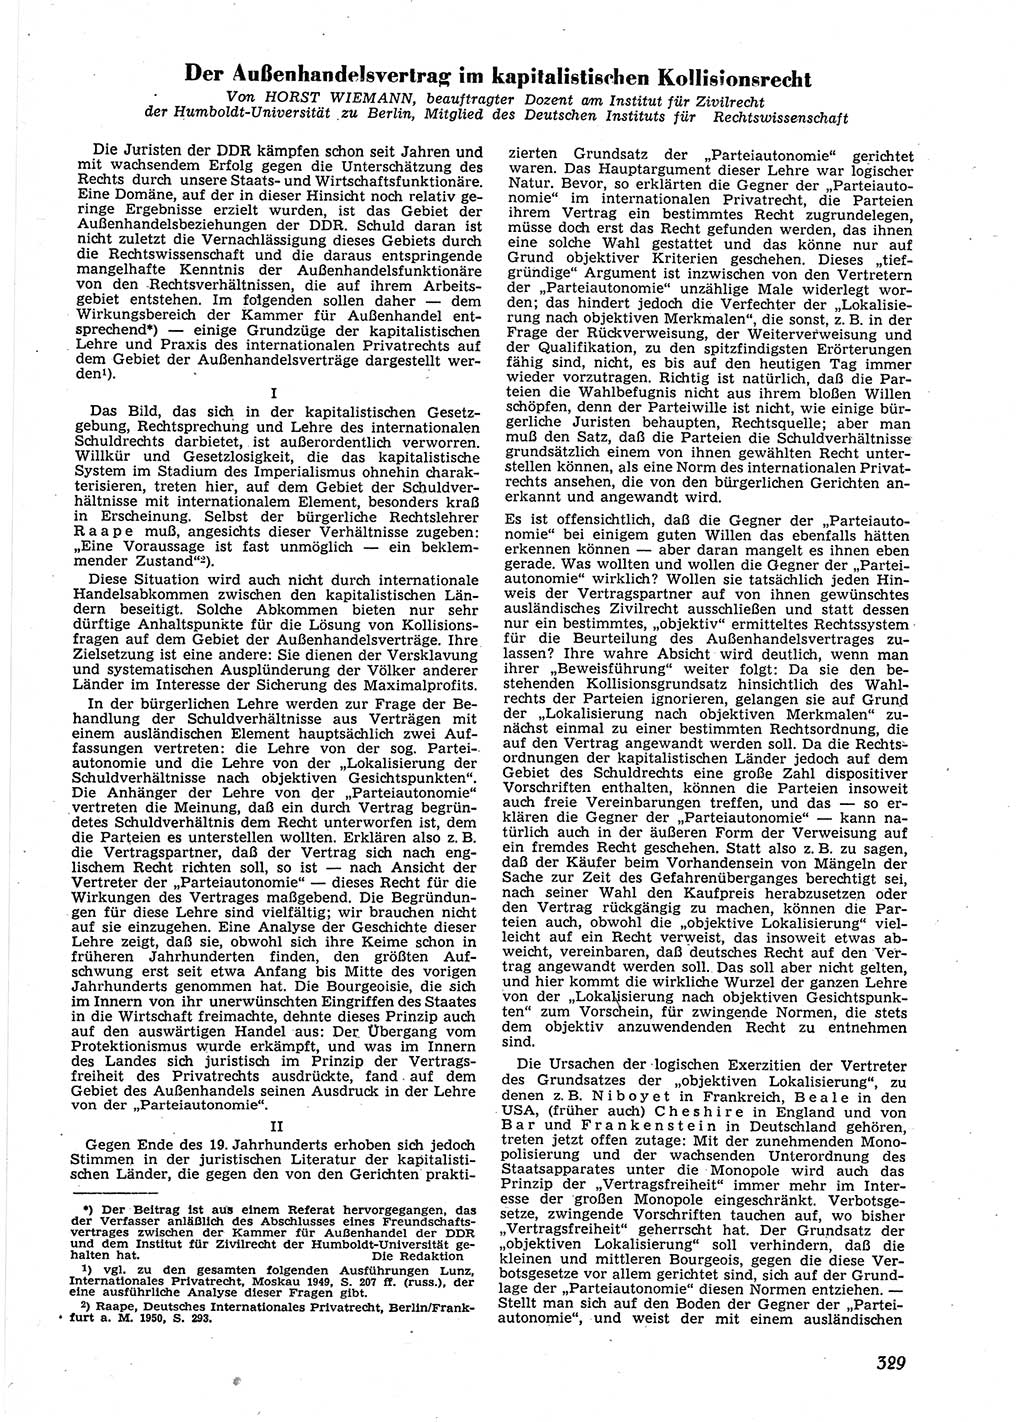 Neue Justiz (NJ), Zeitschrift für Recht und Rechtswissenschaft [Deutsche Demokratische Republik (DDR)], 9. Jahrgang 1955, Seite 329 (NJ DDR 1955, S. 329)